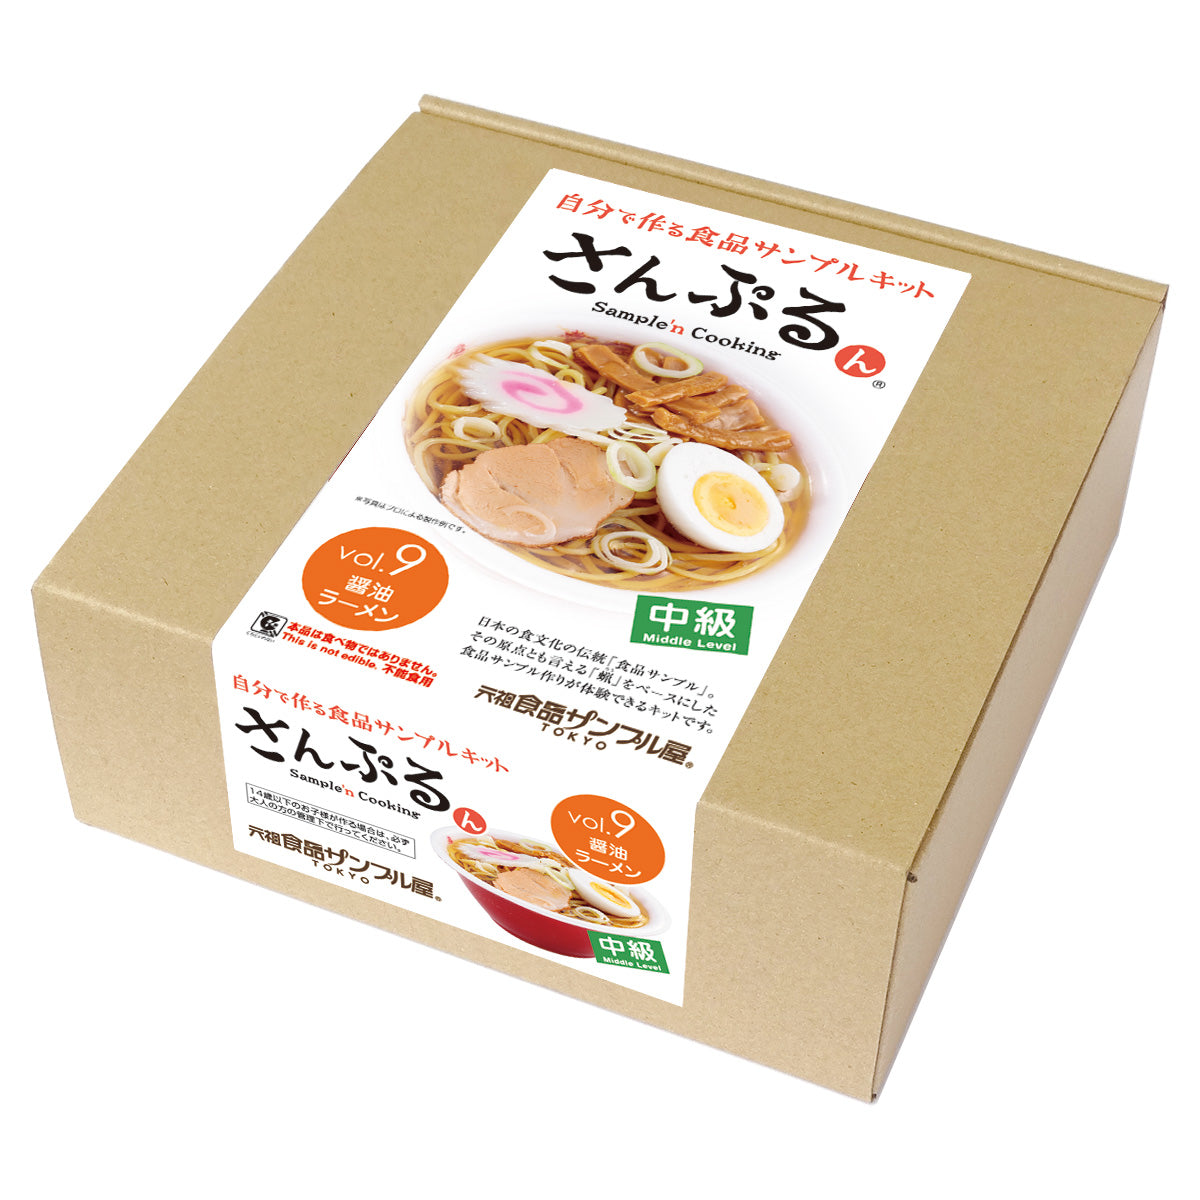 自分で作る食品サンプル製作キット｜さんぷるん Vol.9「醤油ラーメン